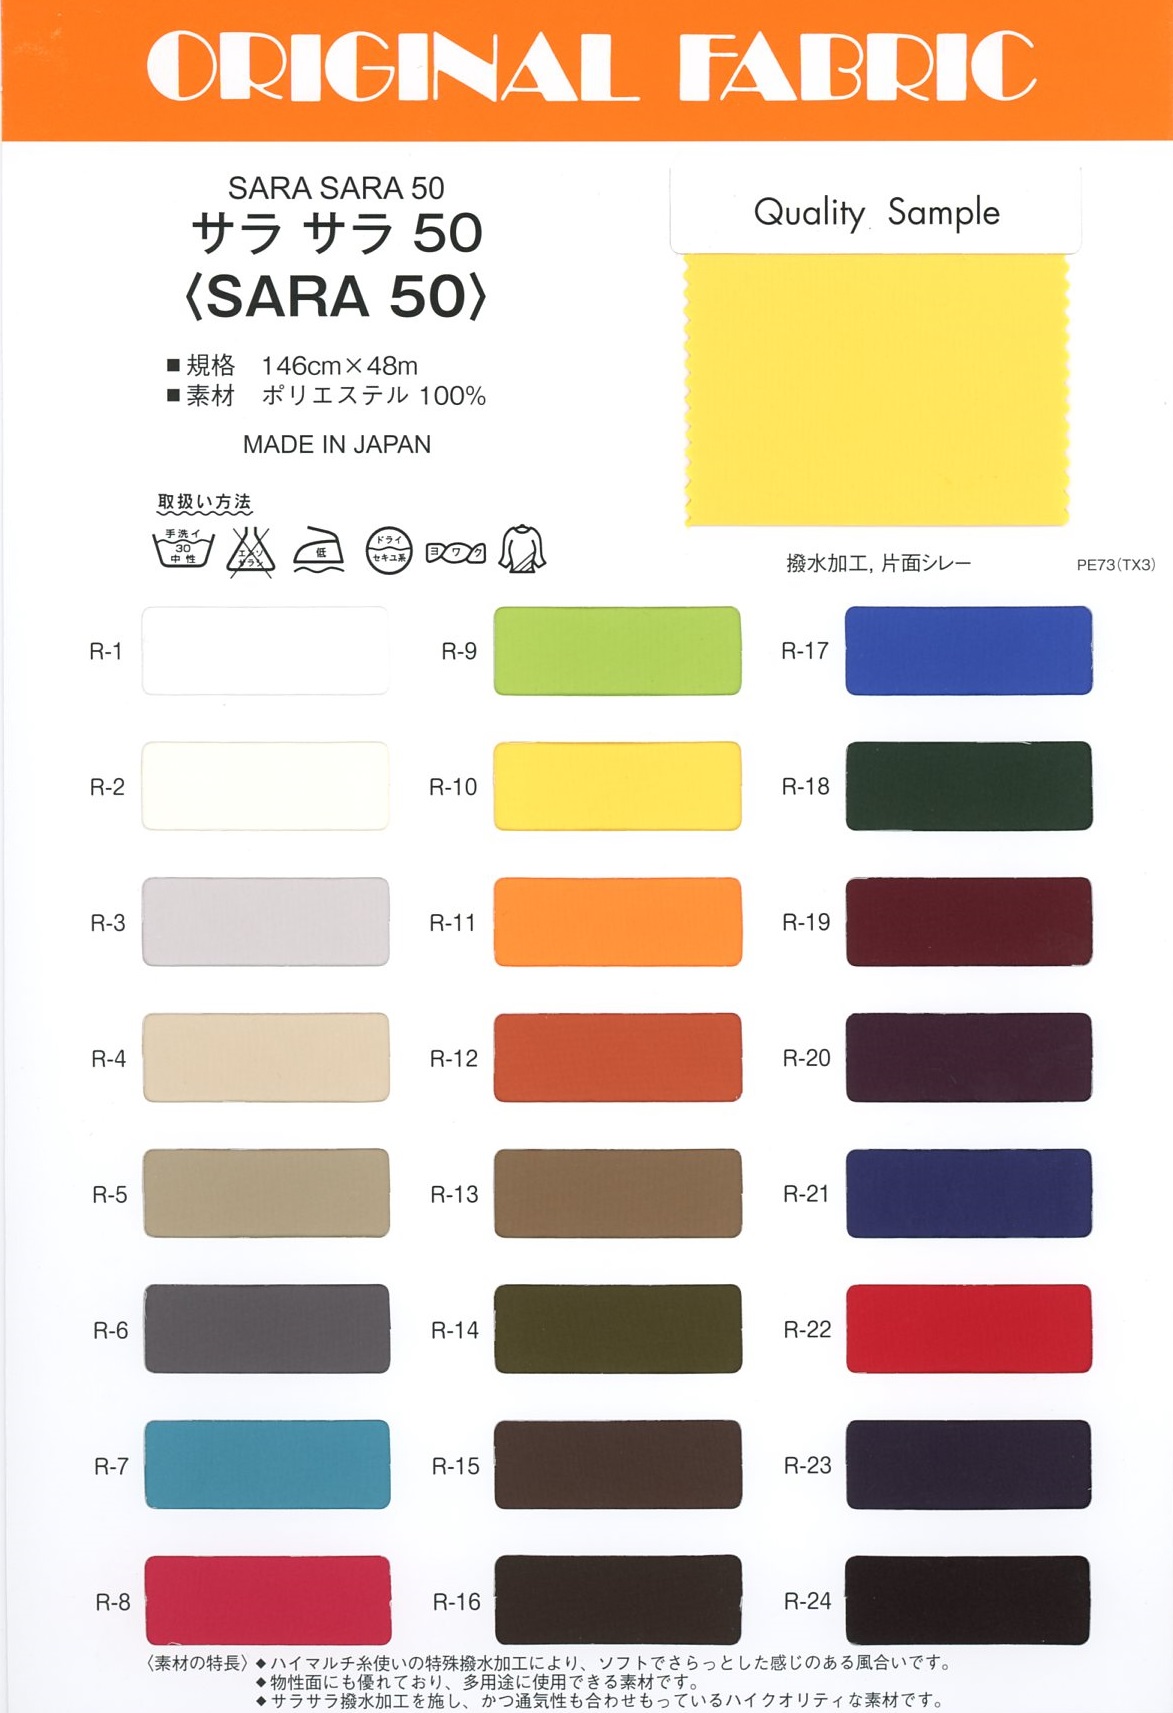 SARA50 Sara Sara 50[Tessile / Tessuto] Masuda